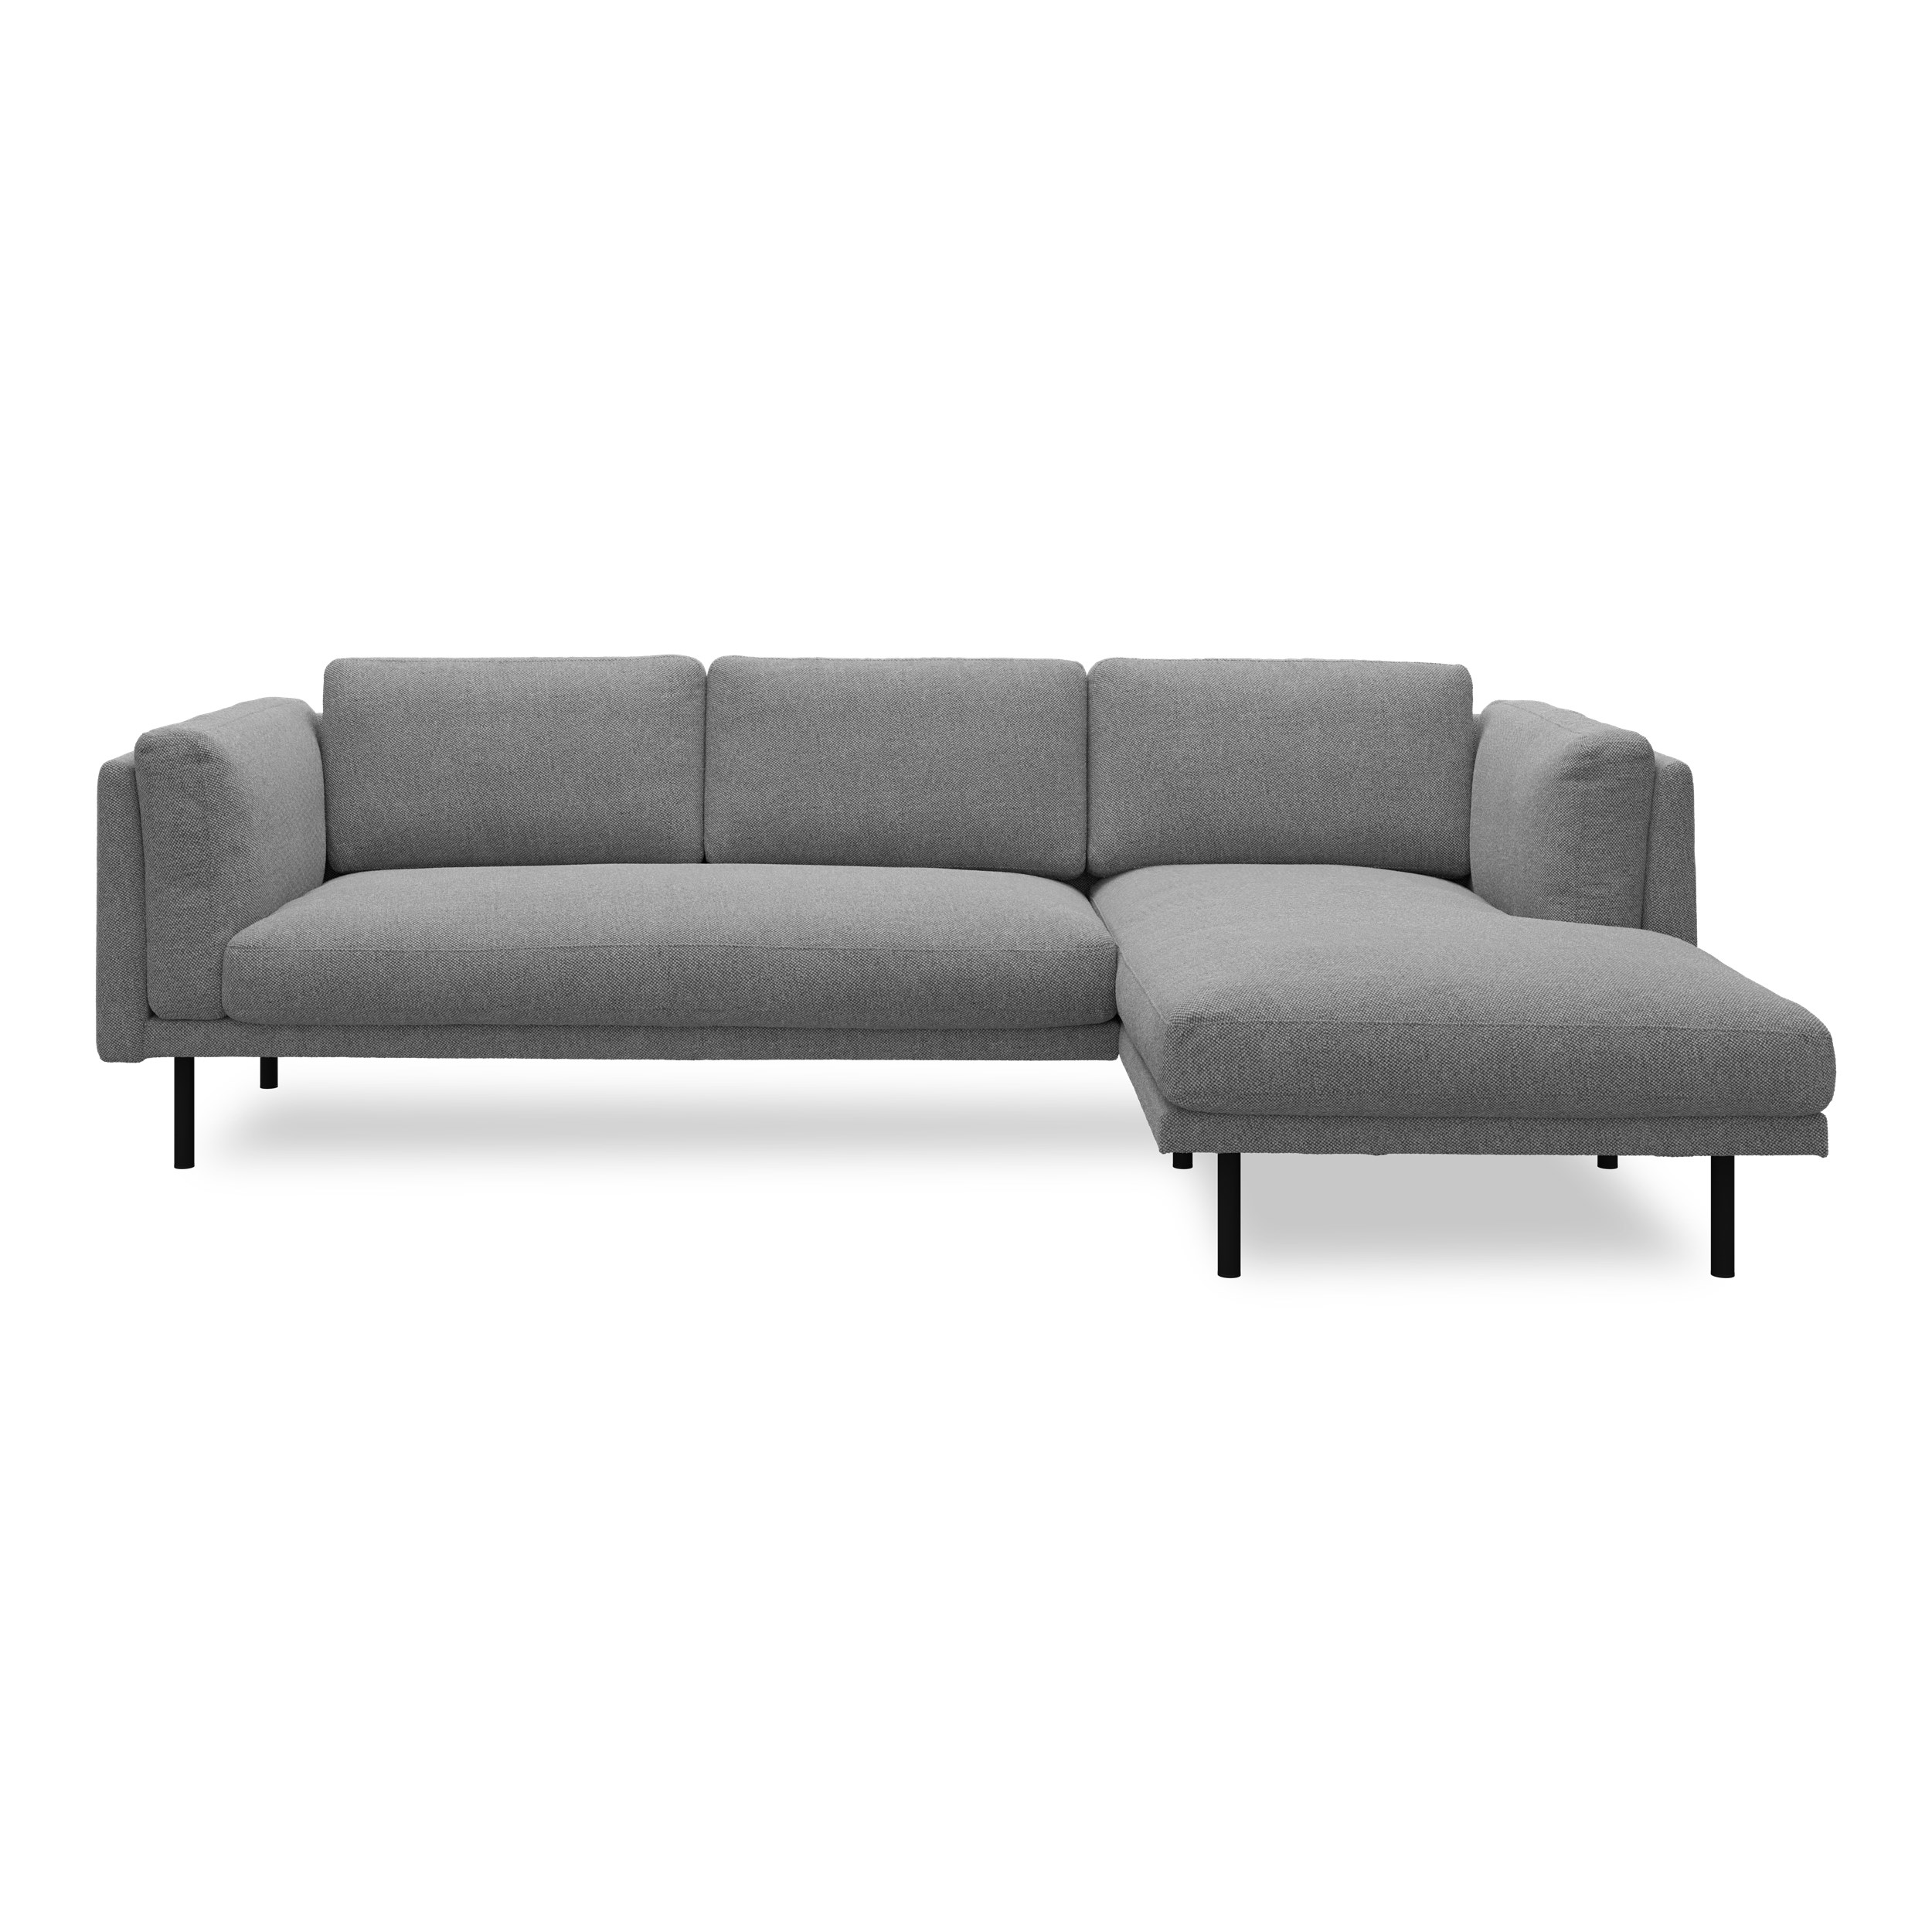 Nebel högervänd soffa med schäslong - Denno 87 Slate grey klädsel och svart pulverlackerad metall